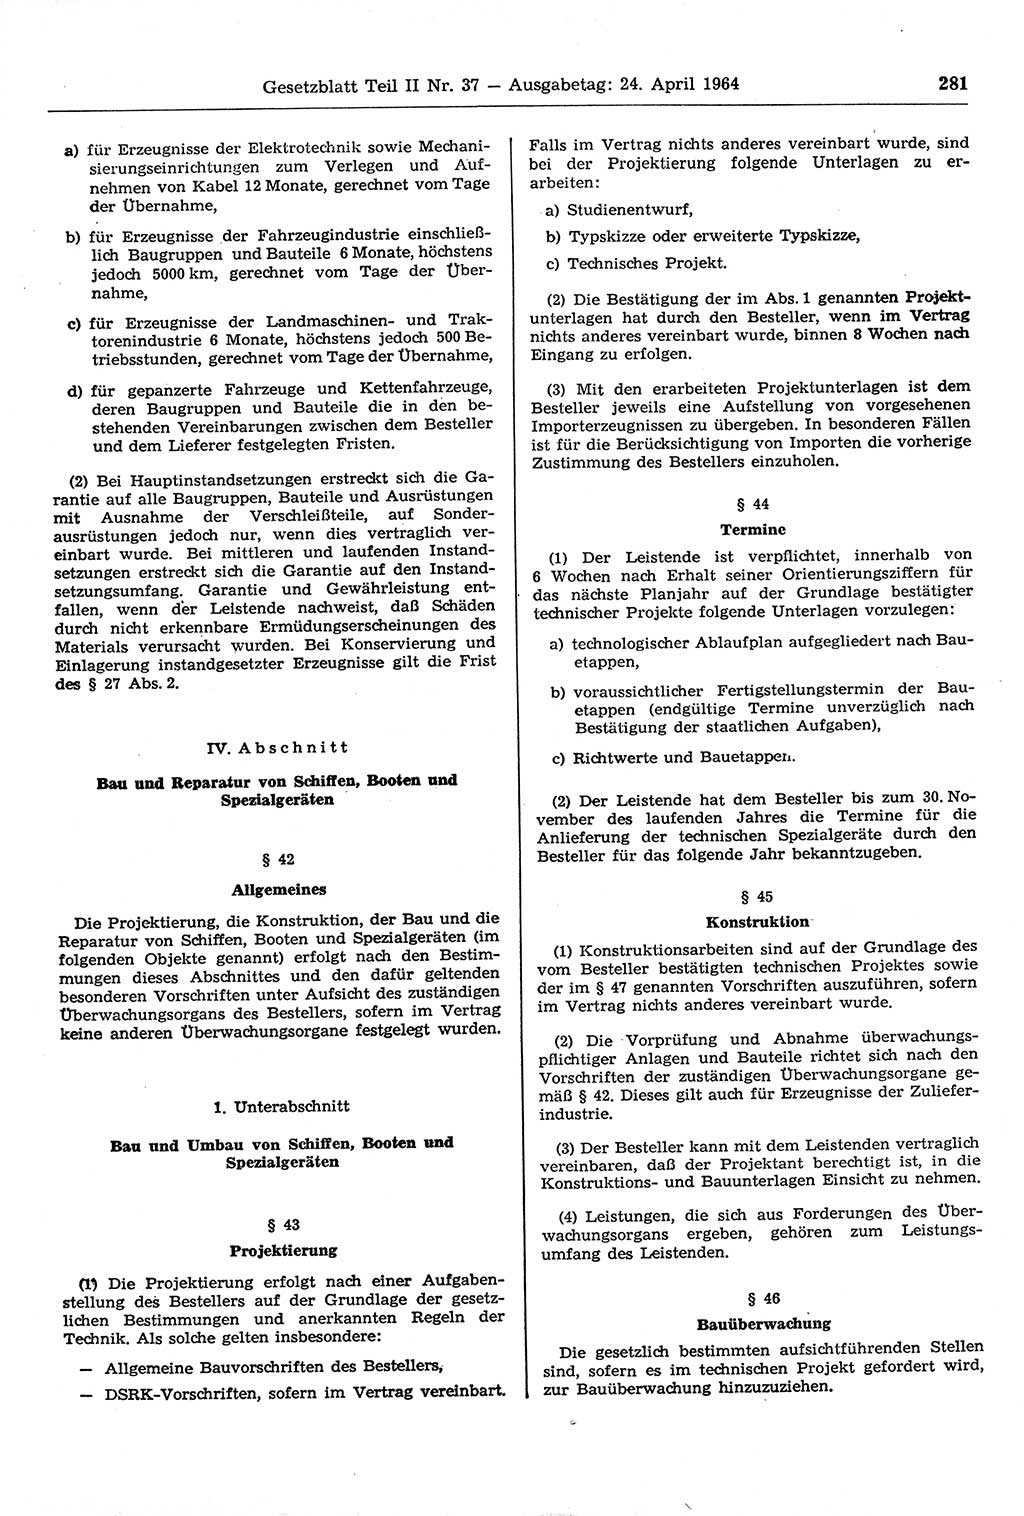 Gesetzblatt (GBl.) der Deutschen Demokratischen Republik (DDR) Teil ⅠⅠ 1964, Seite 281 (GBl. DDR ⅠⅠ 1964, S. 281)